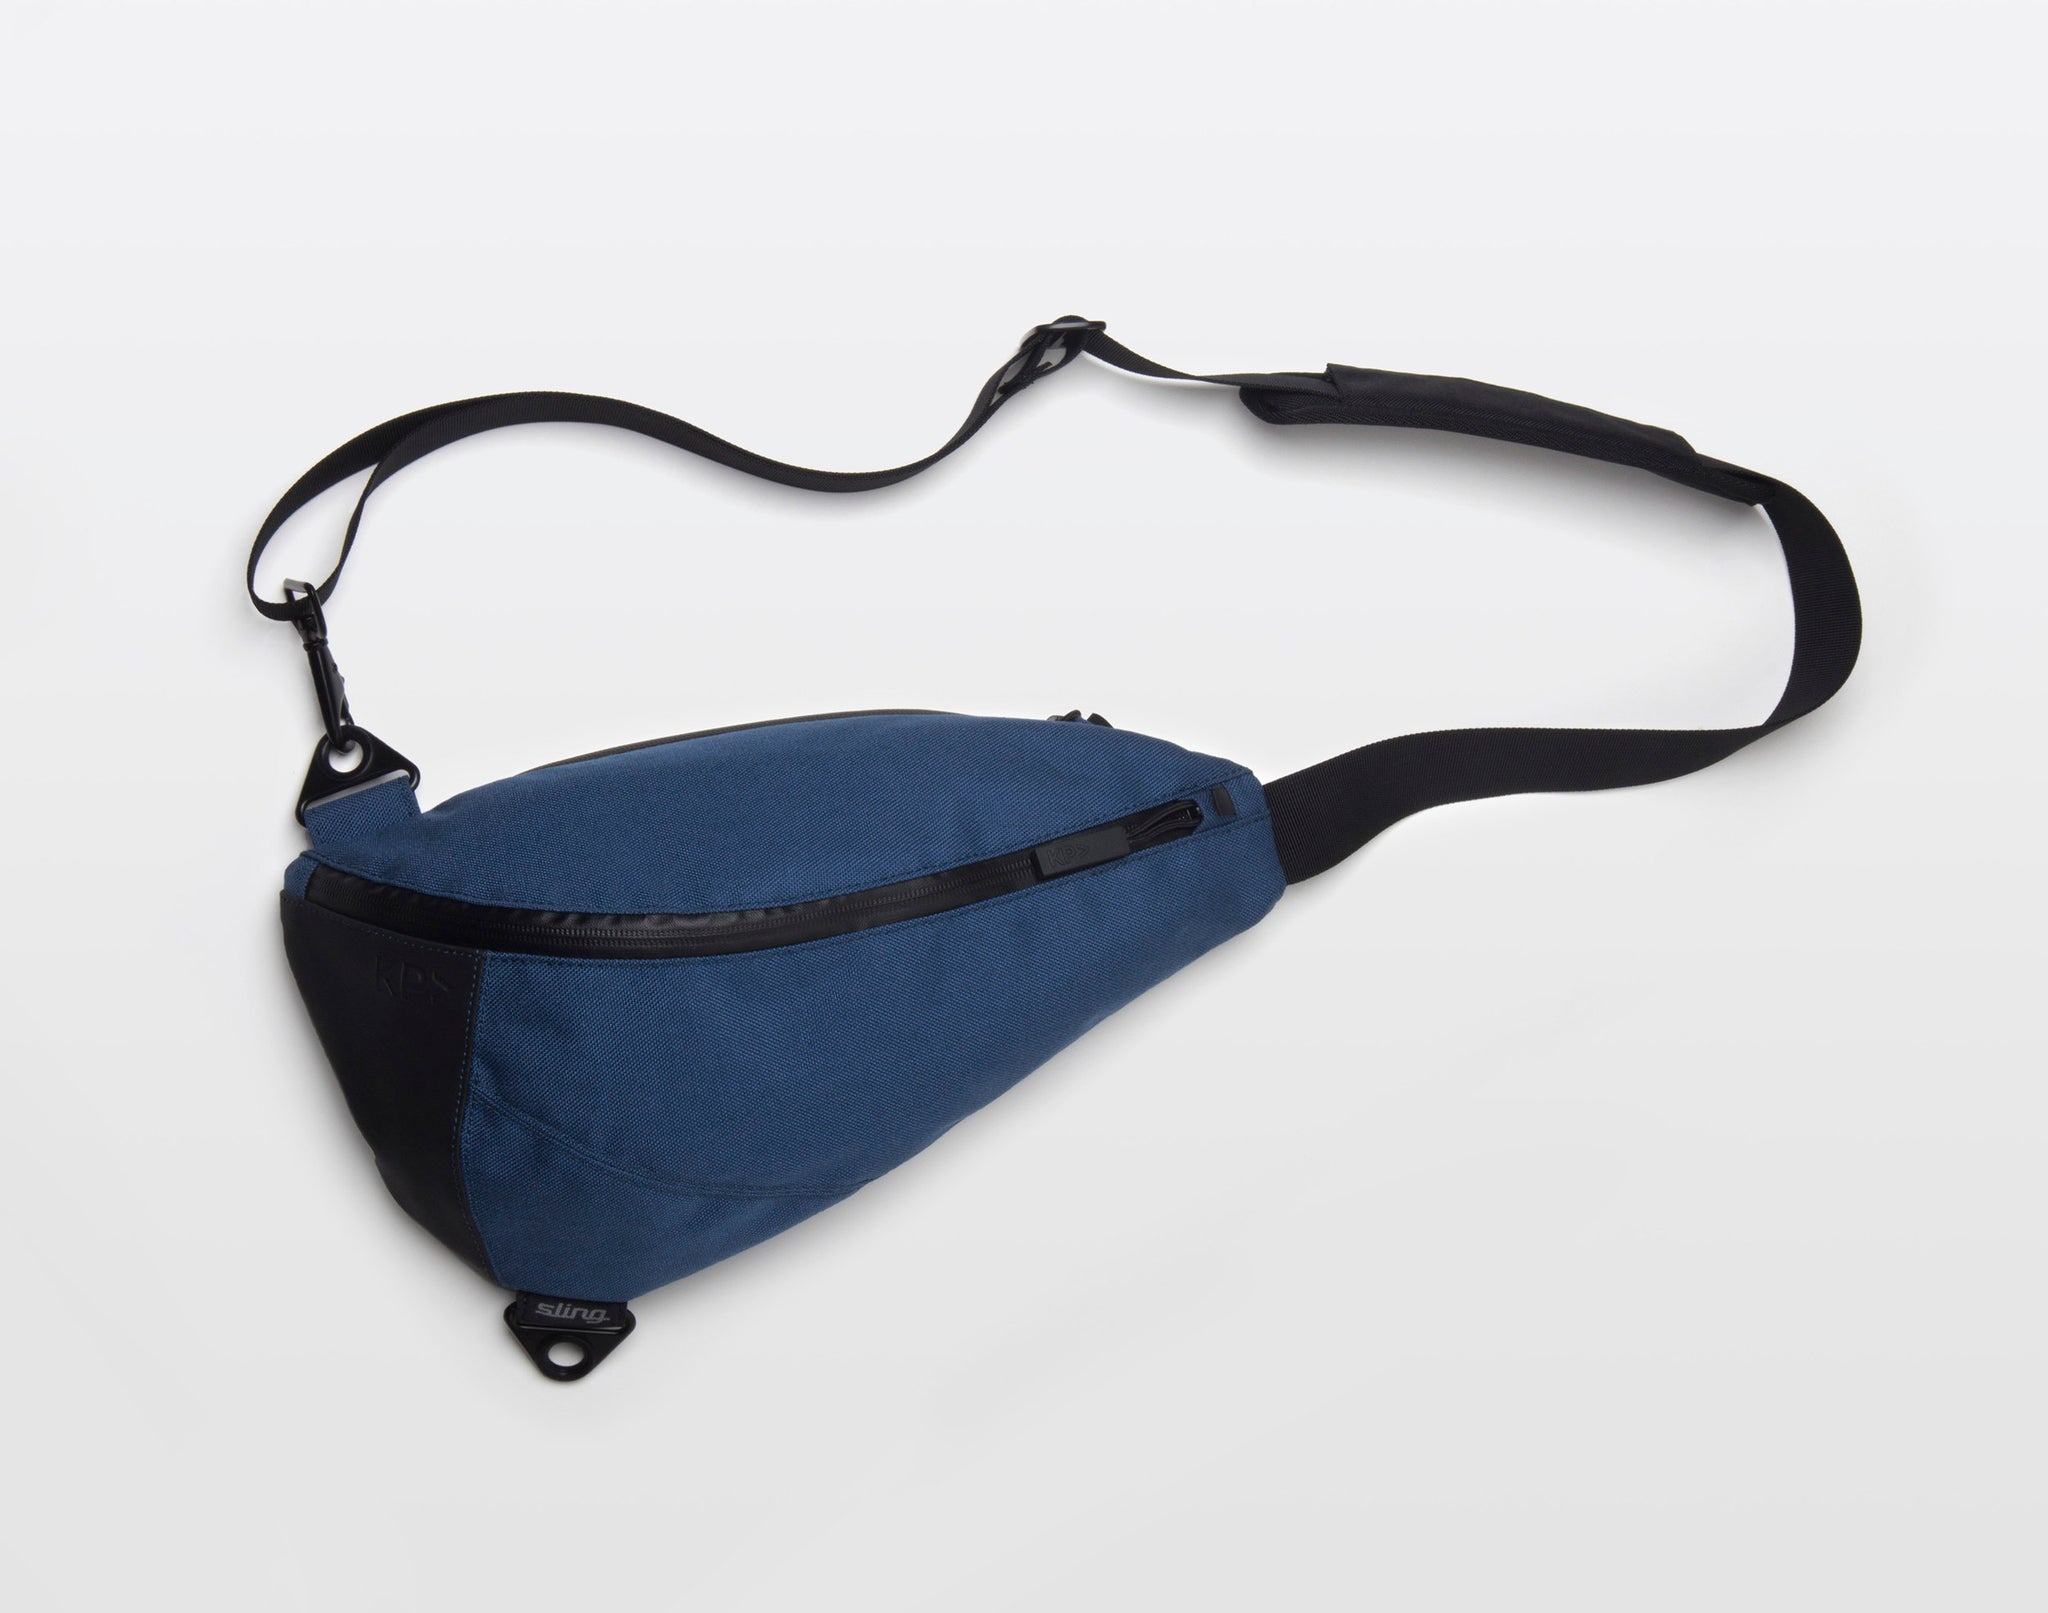 Sling Cross-Body Bag